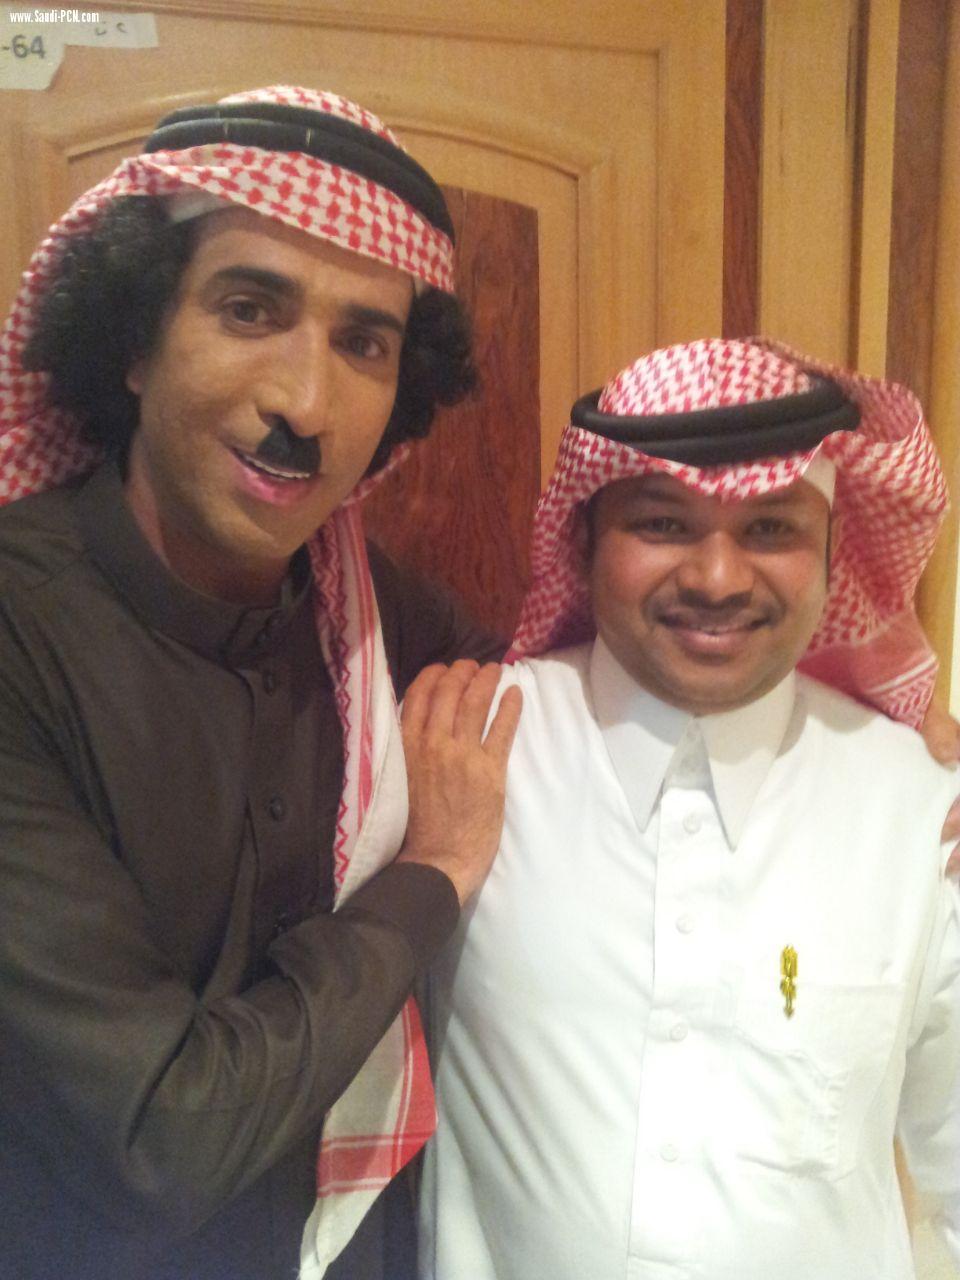 الفنان سامي مولفي سطع نجمه ولمع في وسط ساحة الفن السعودي